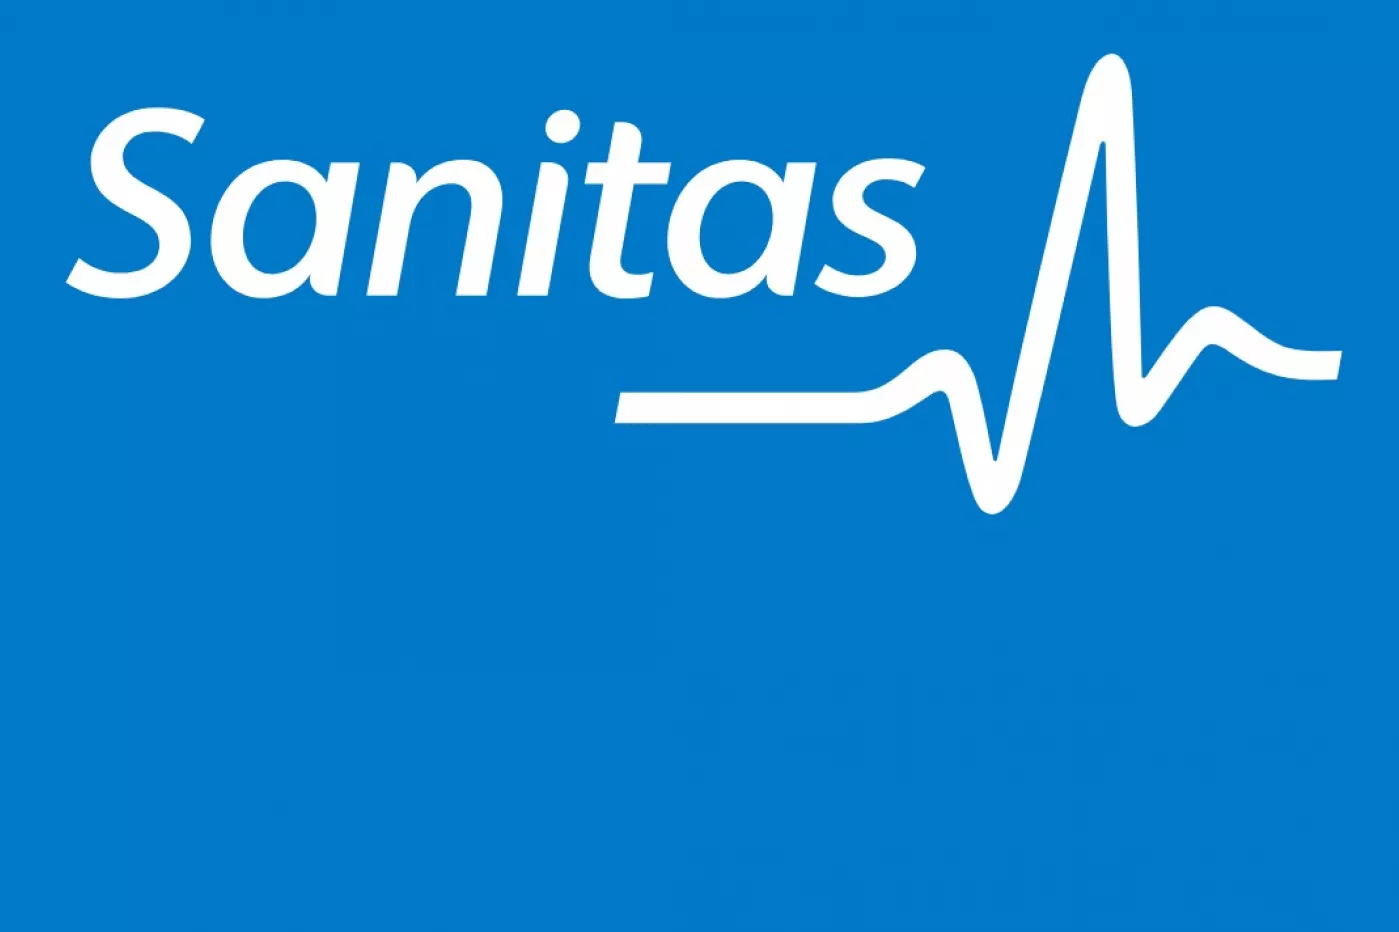 Sanitas es una de las principales aseguradoras de salud en España.